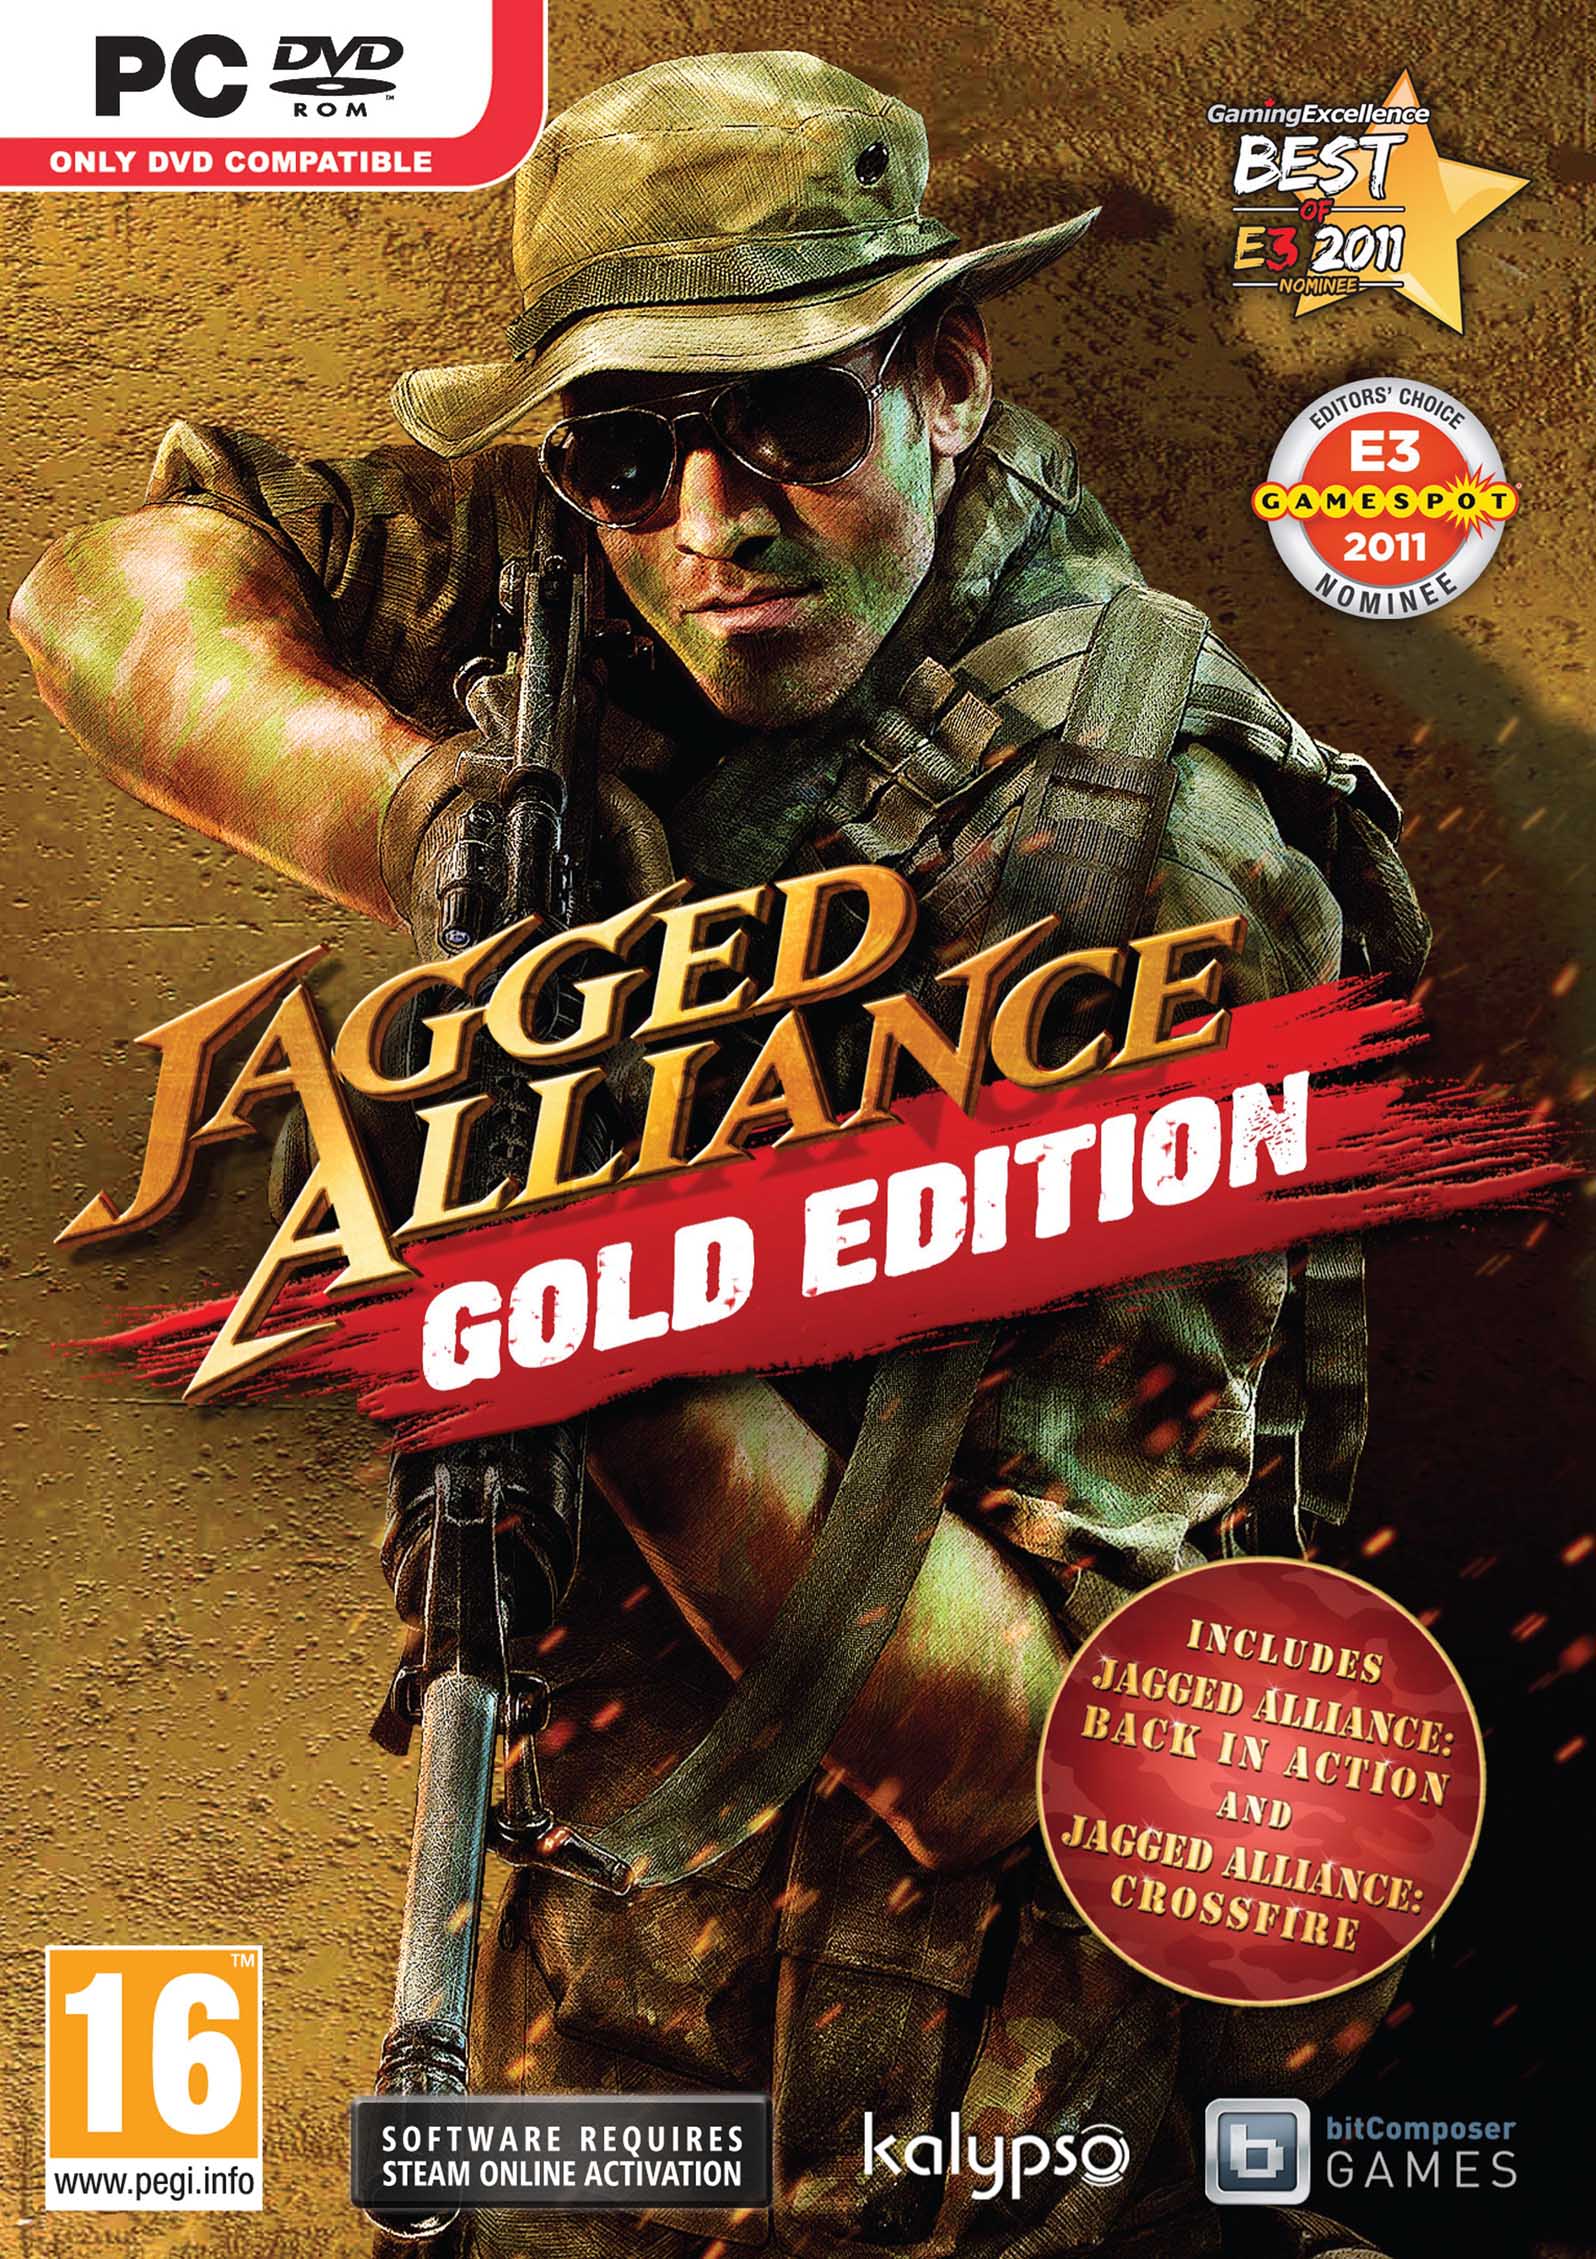 download jagged alliance gog